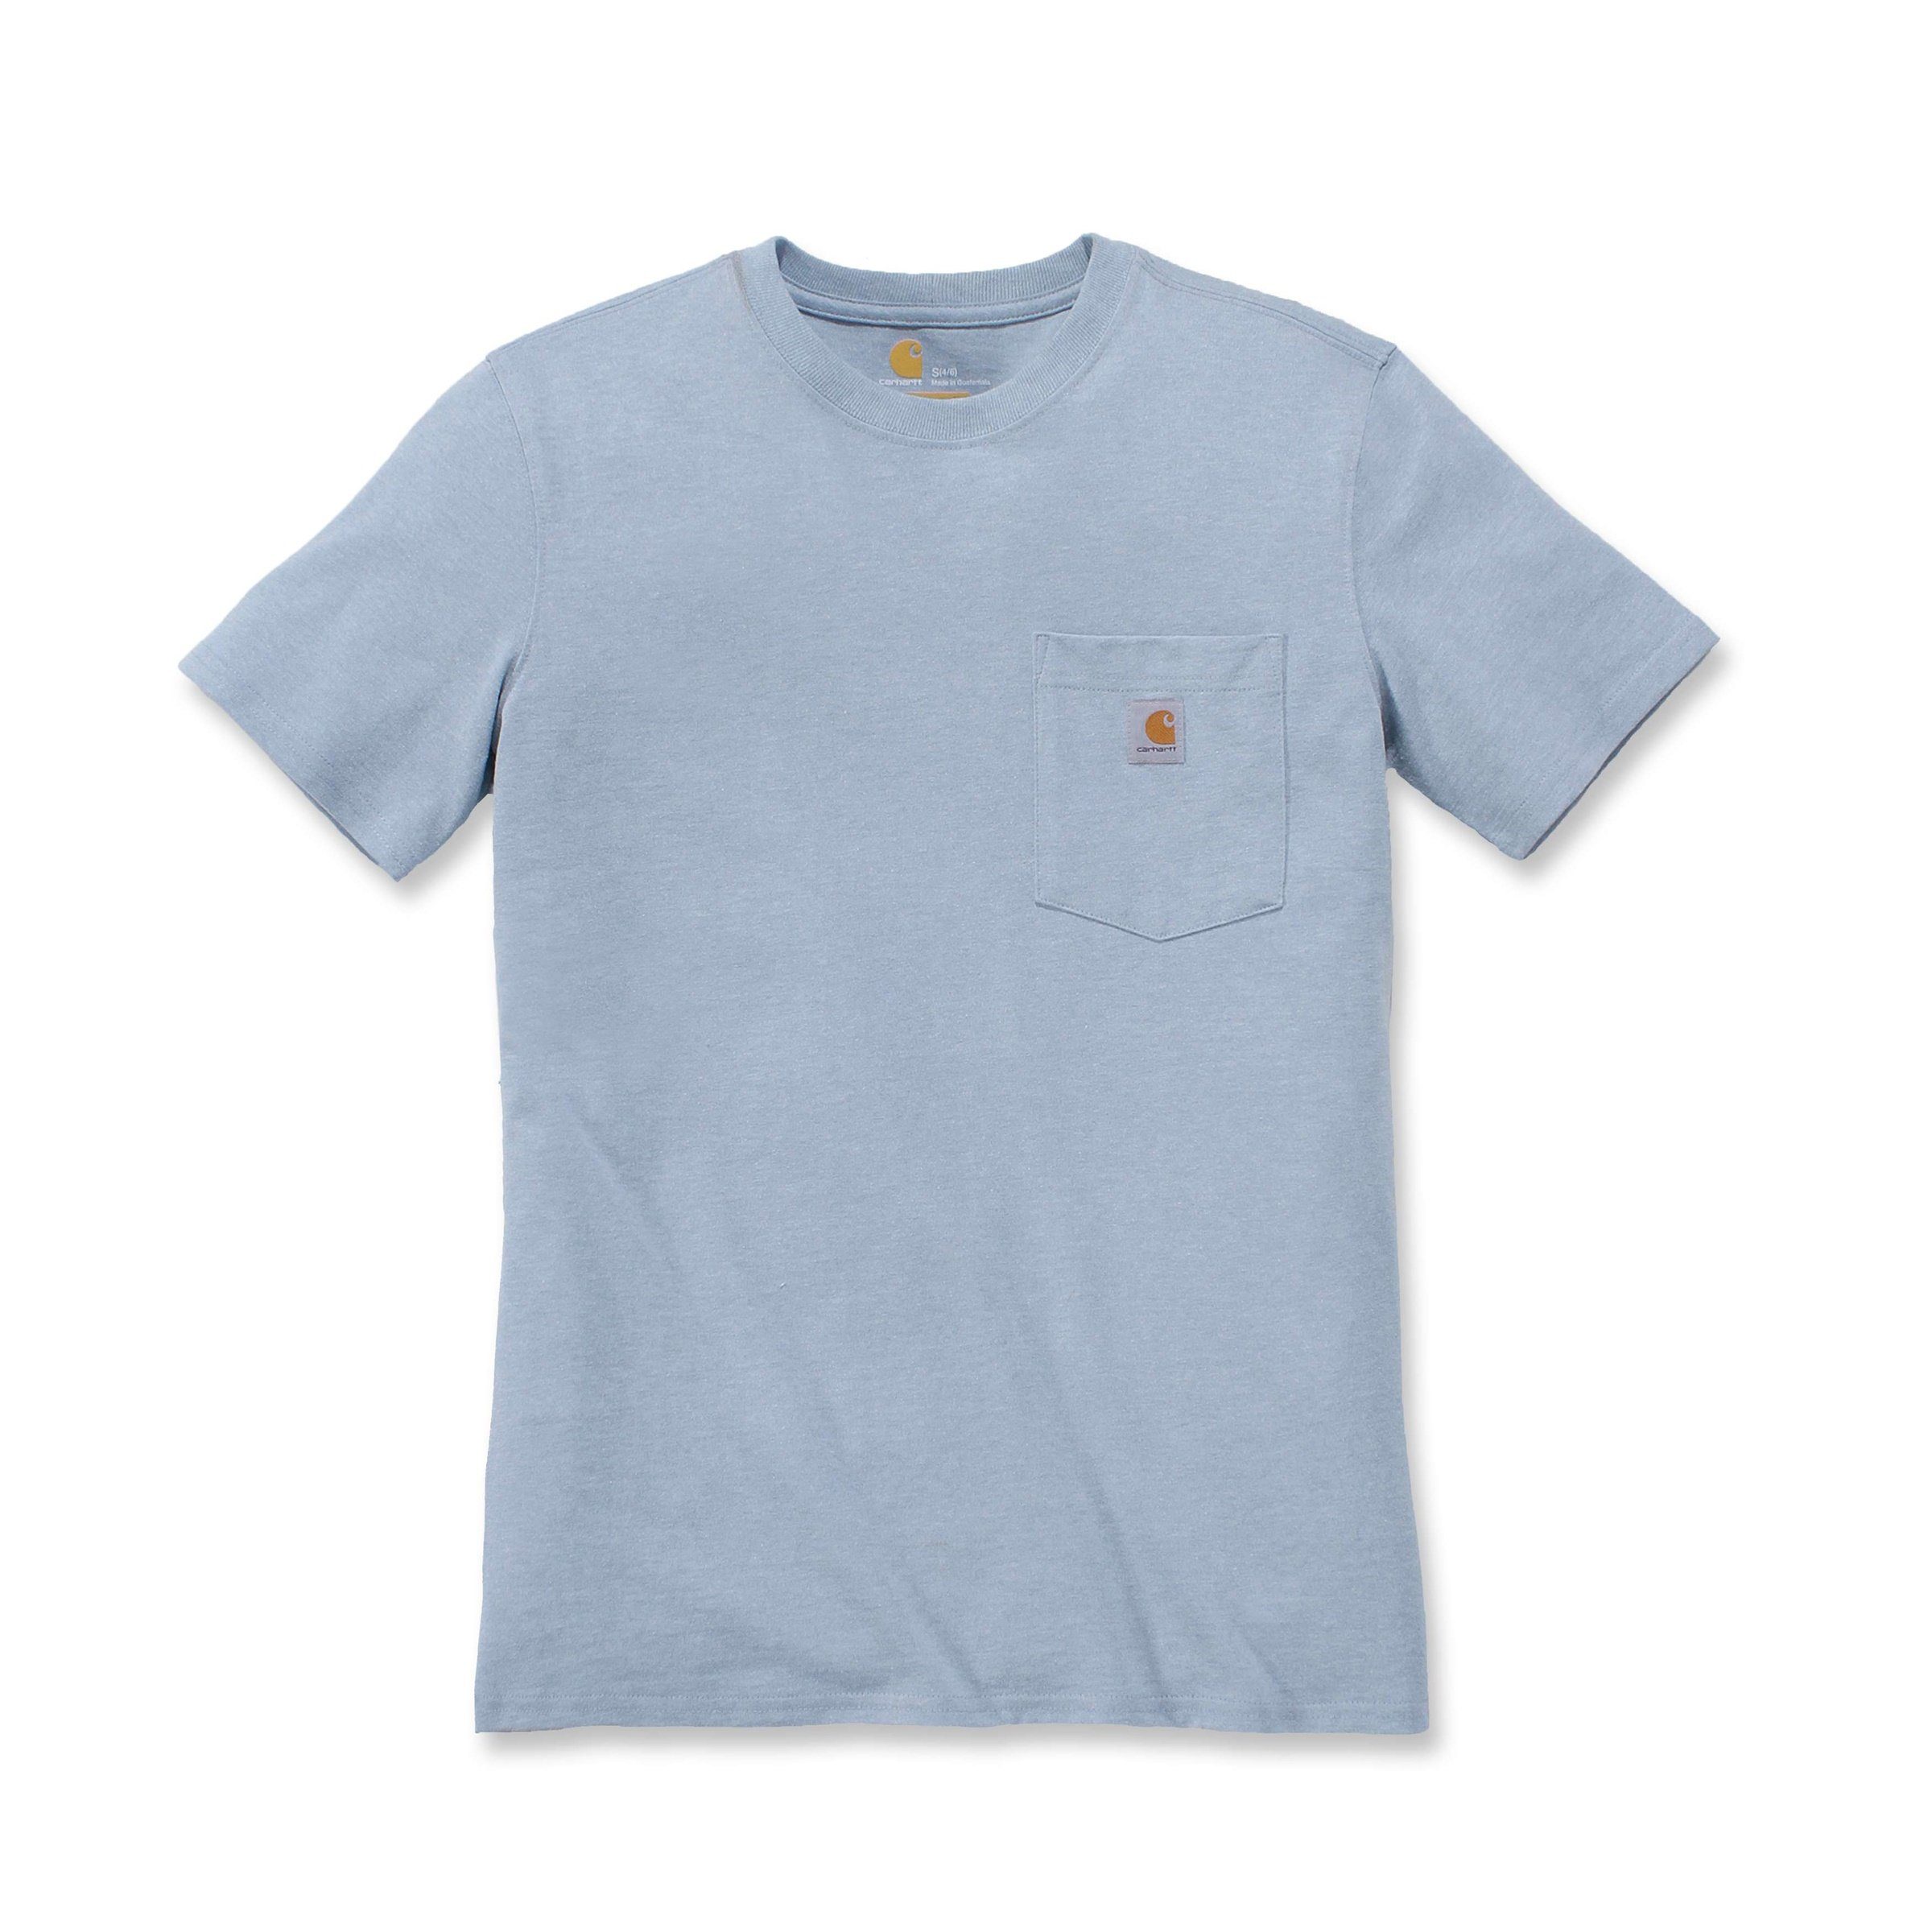 Carhartt T-Shirt Carhartt Damen T-Shirt Heavyweight heather blue Adult Fit scout Pocket Short-Sleeve Loose